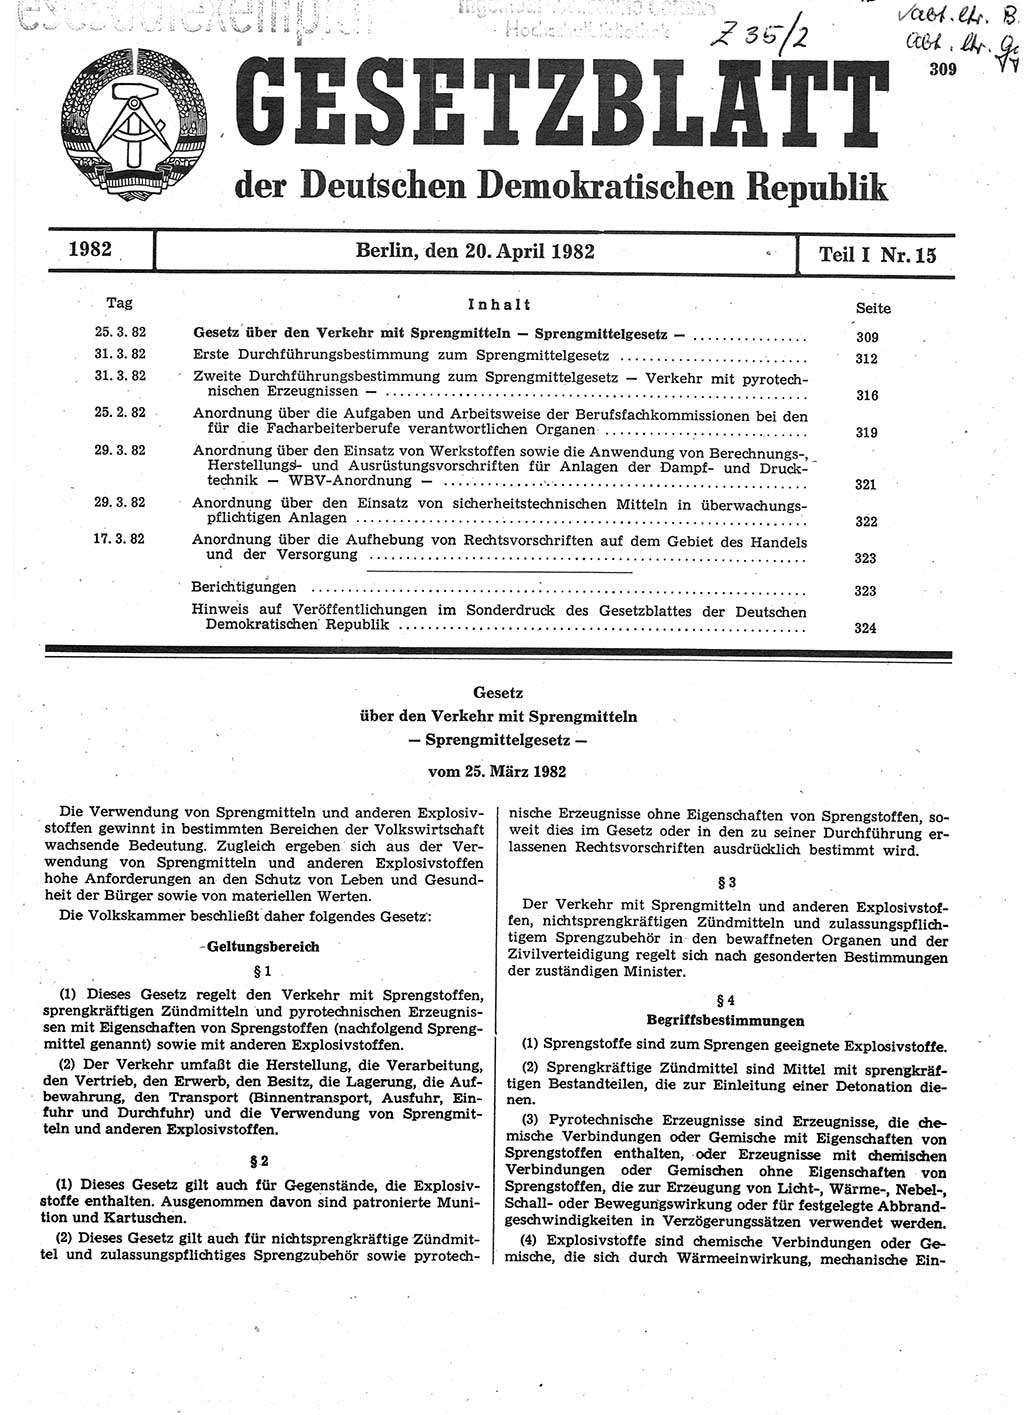 Gesetzblatt (GBl.) der Deutschen Demokratischen Republik (DDR) Teil Ⅰ 1982, Seite 309 (GBl. DDR Ⅰ 1982, S. 309)